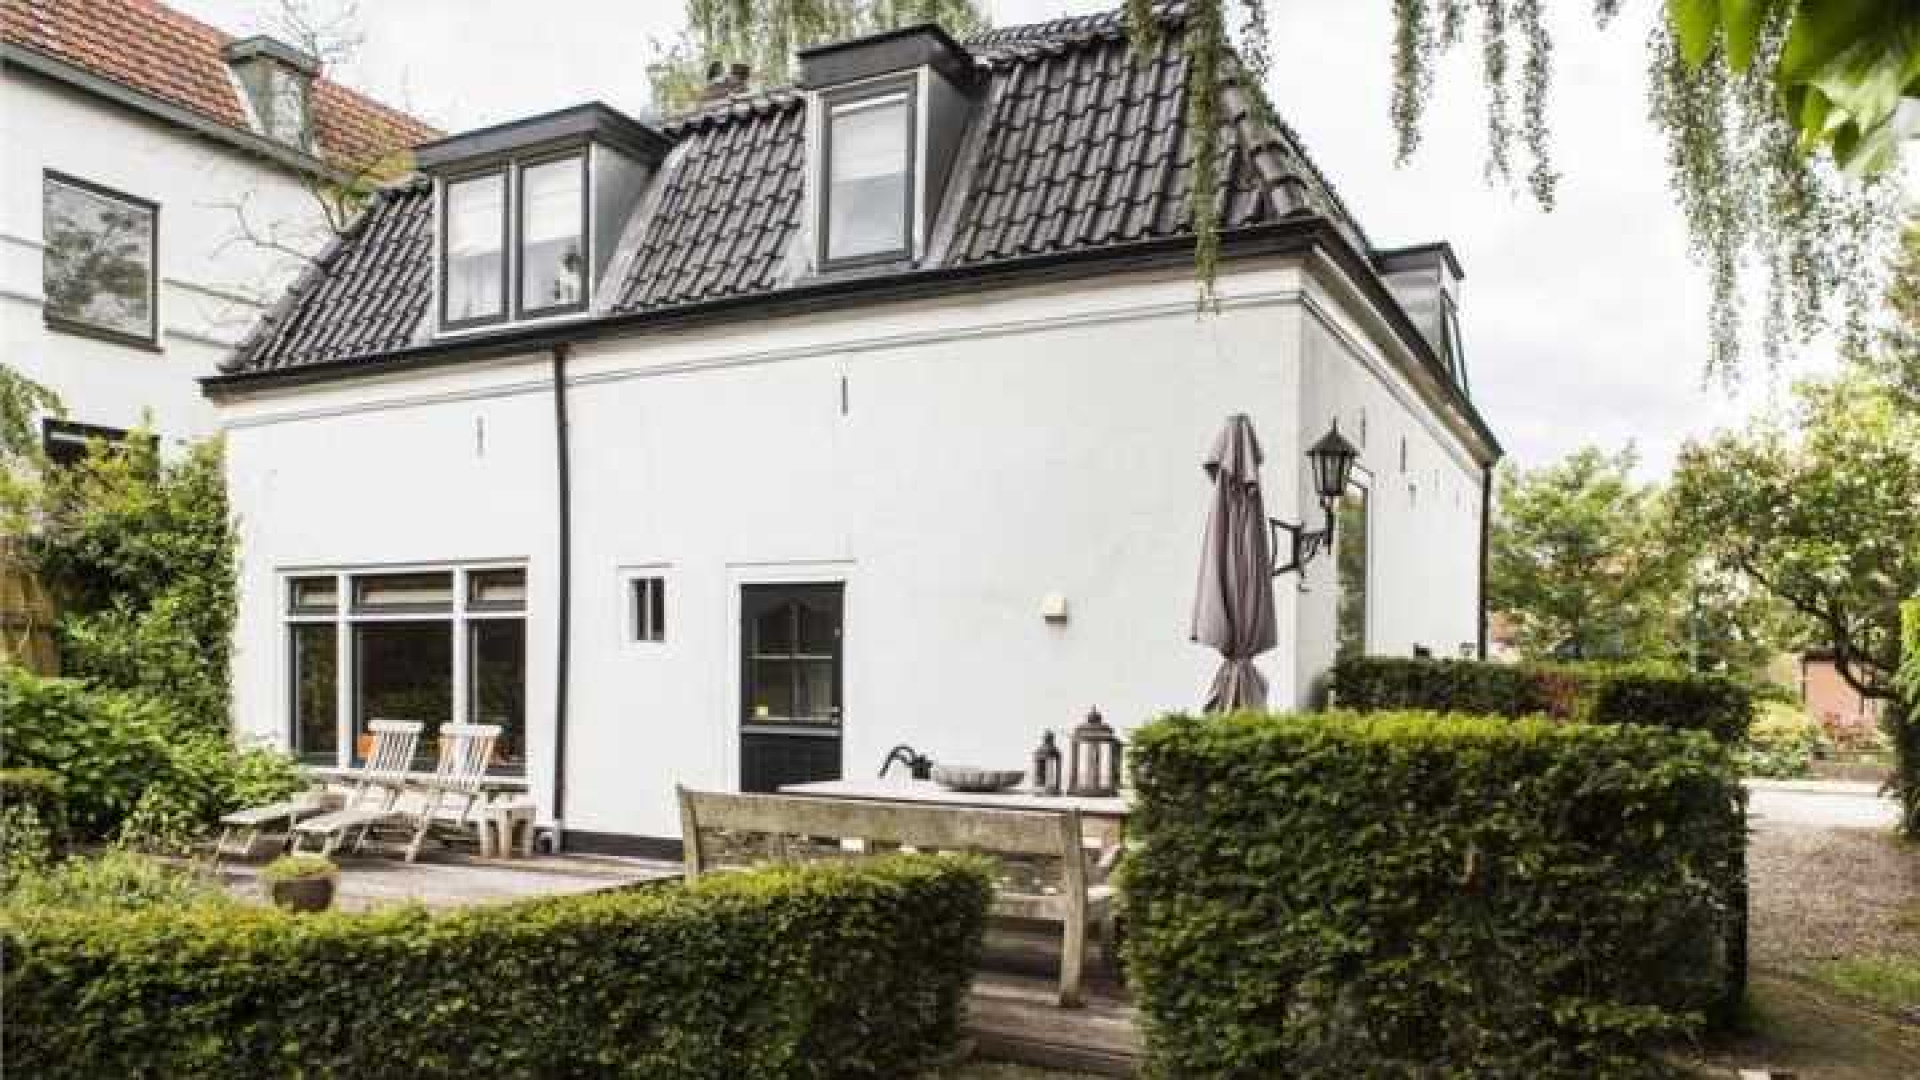 Mariska Hulscher zet haar villa in Baarn te koop. Zie foto's